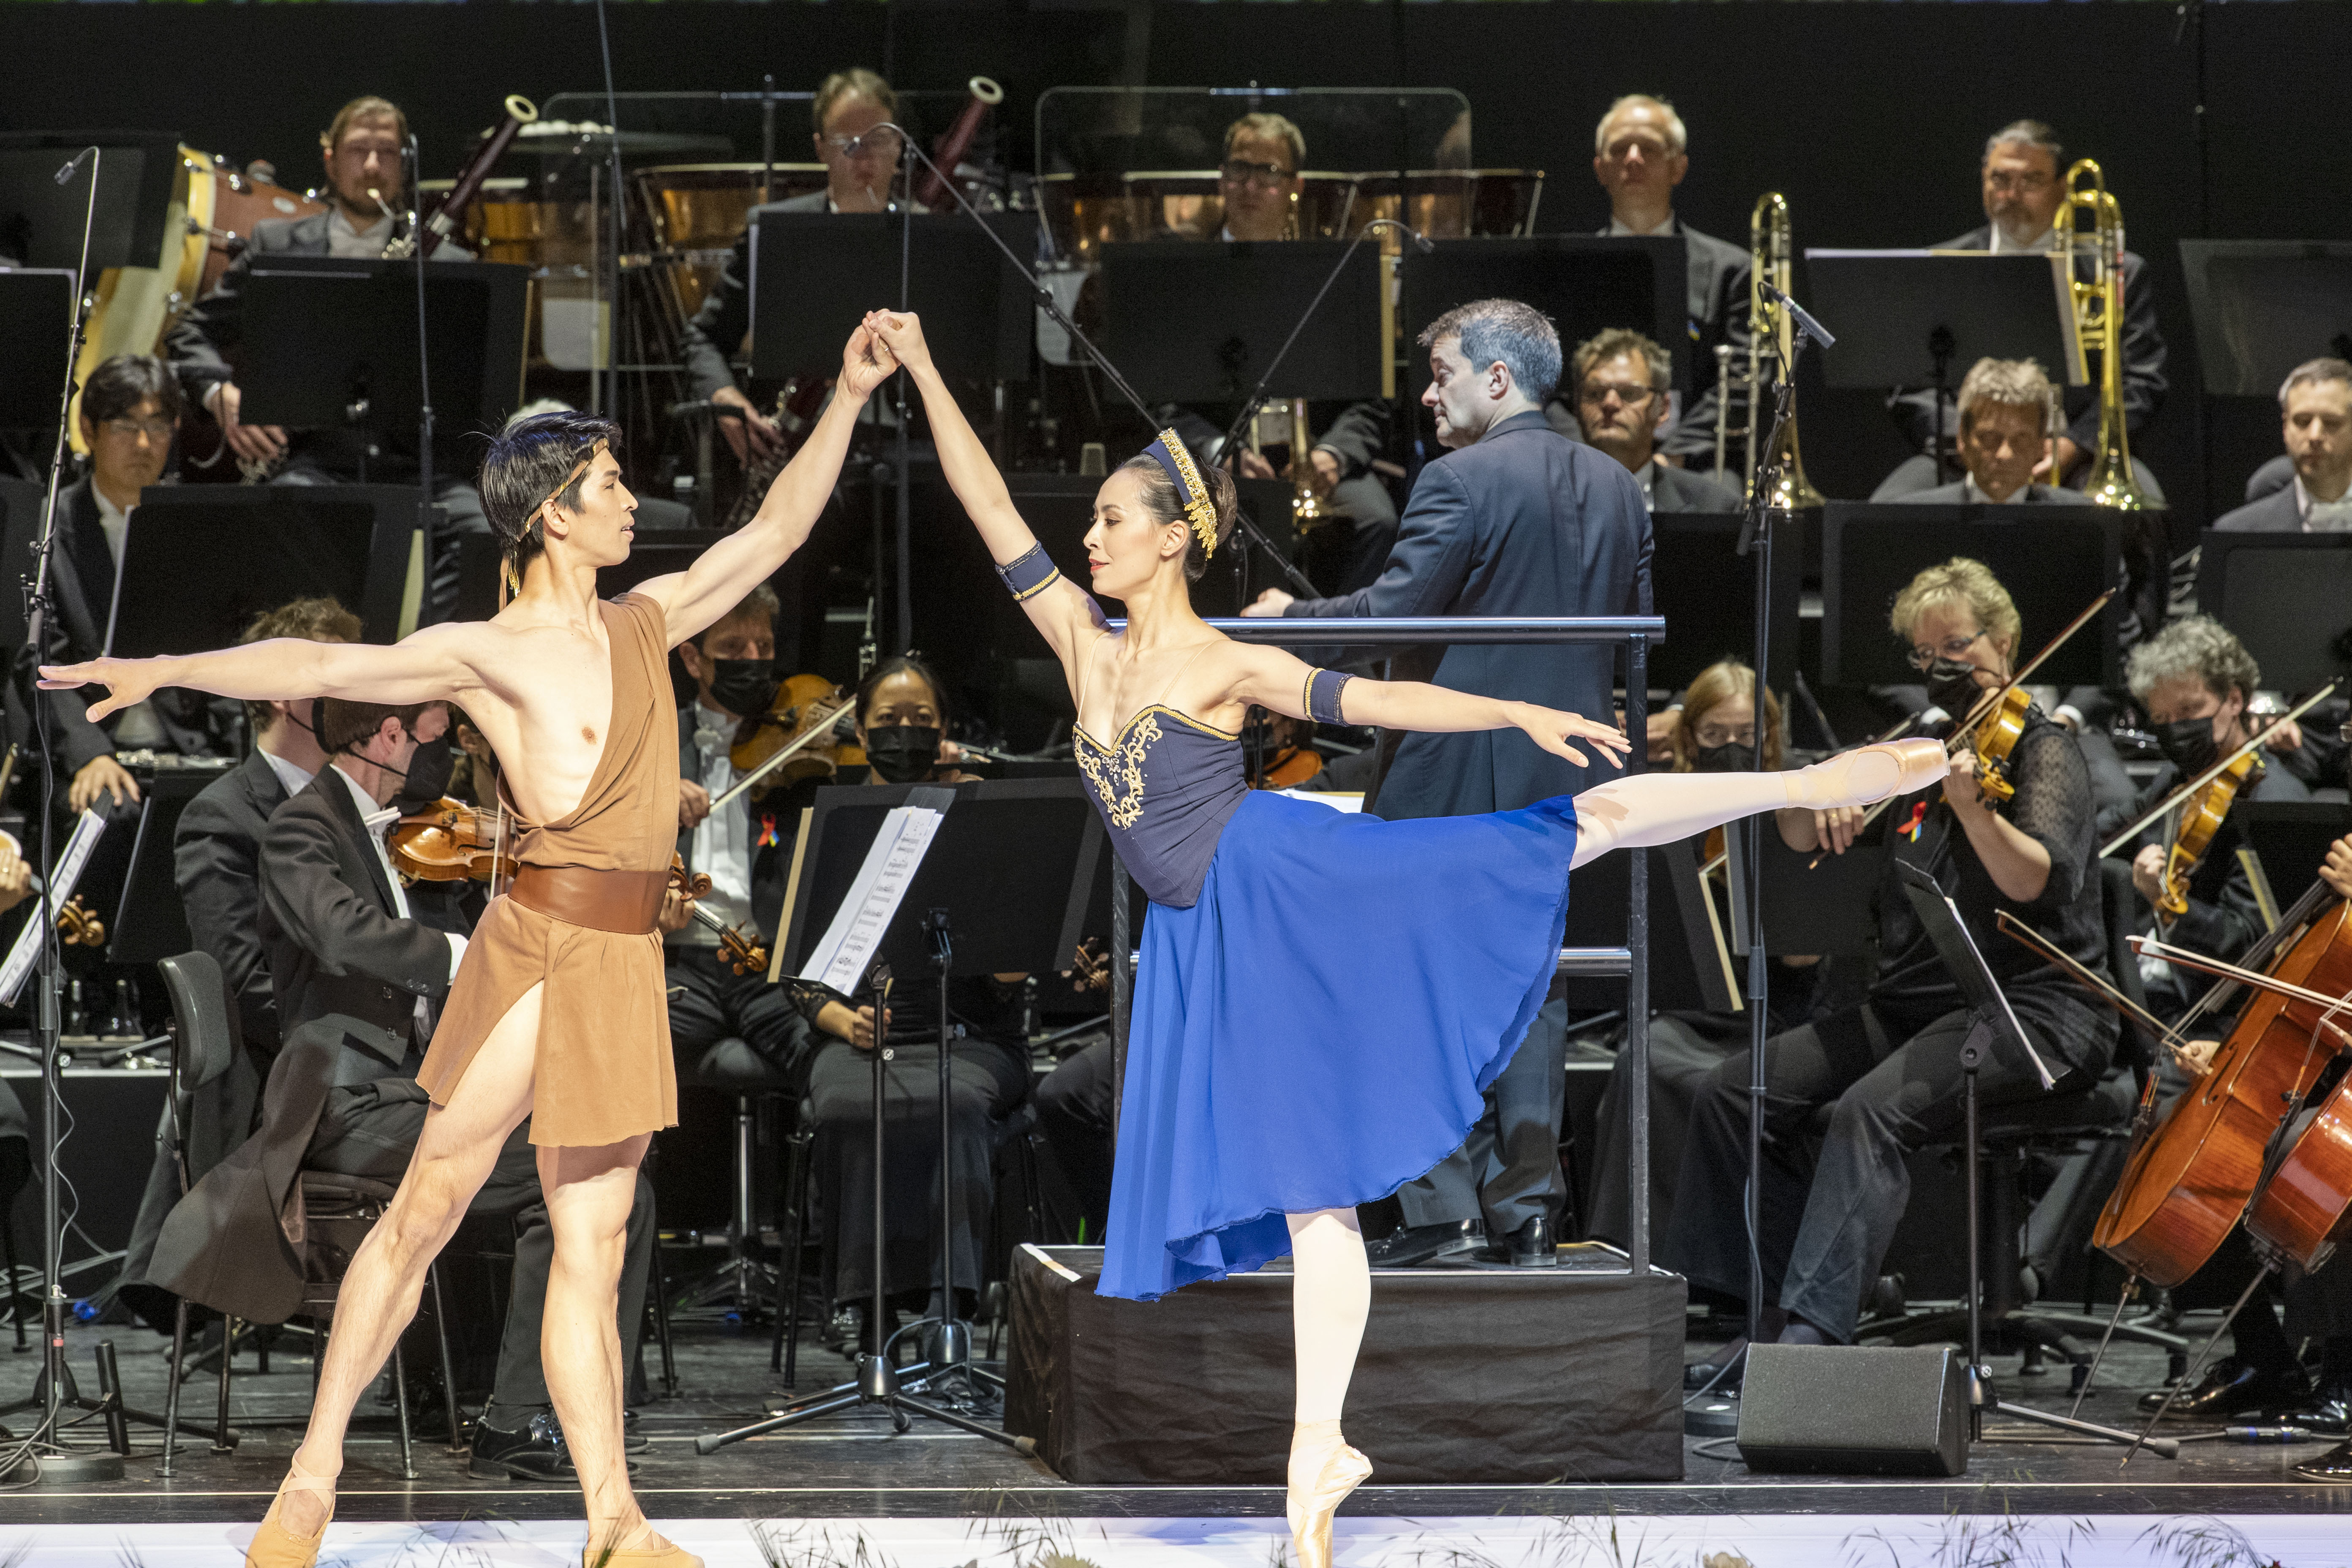 Kiyoka Hashimoto und Masayu Kimono vom Wiener Staatsballett traten bei der 10. Operngala Bonn auf